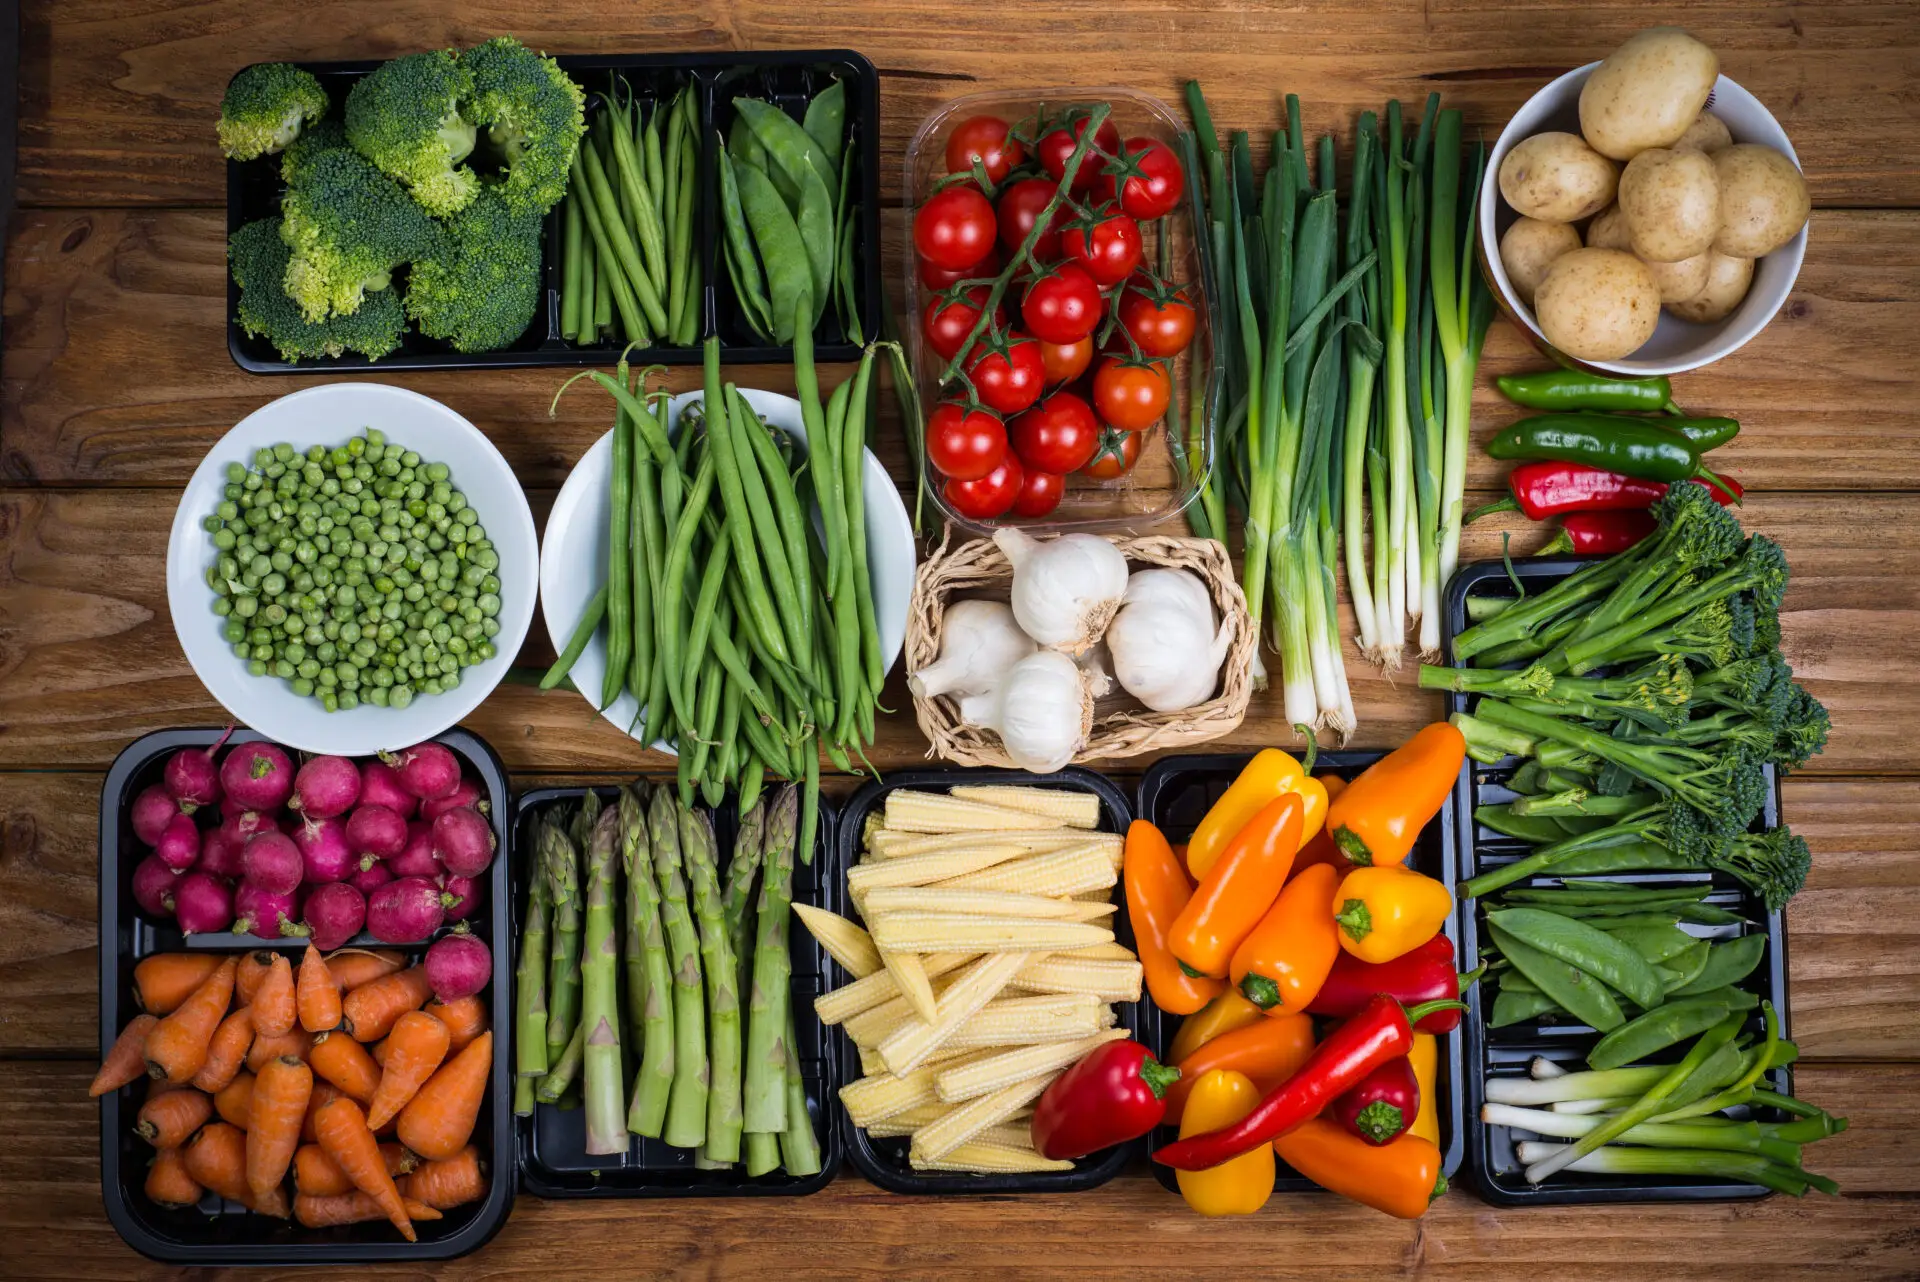 imagen destacada de los 10 tipos de verdura que podemos consumir en nuestra dieta diaria